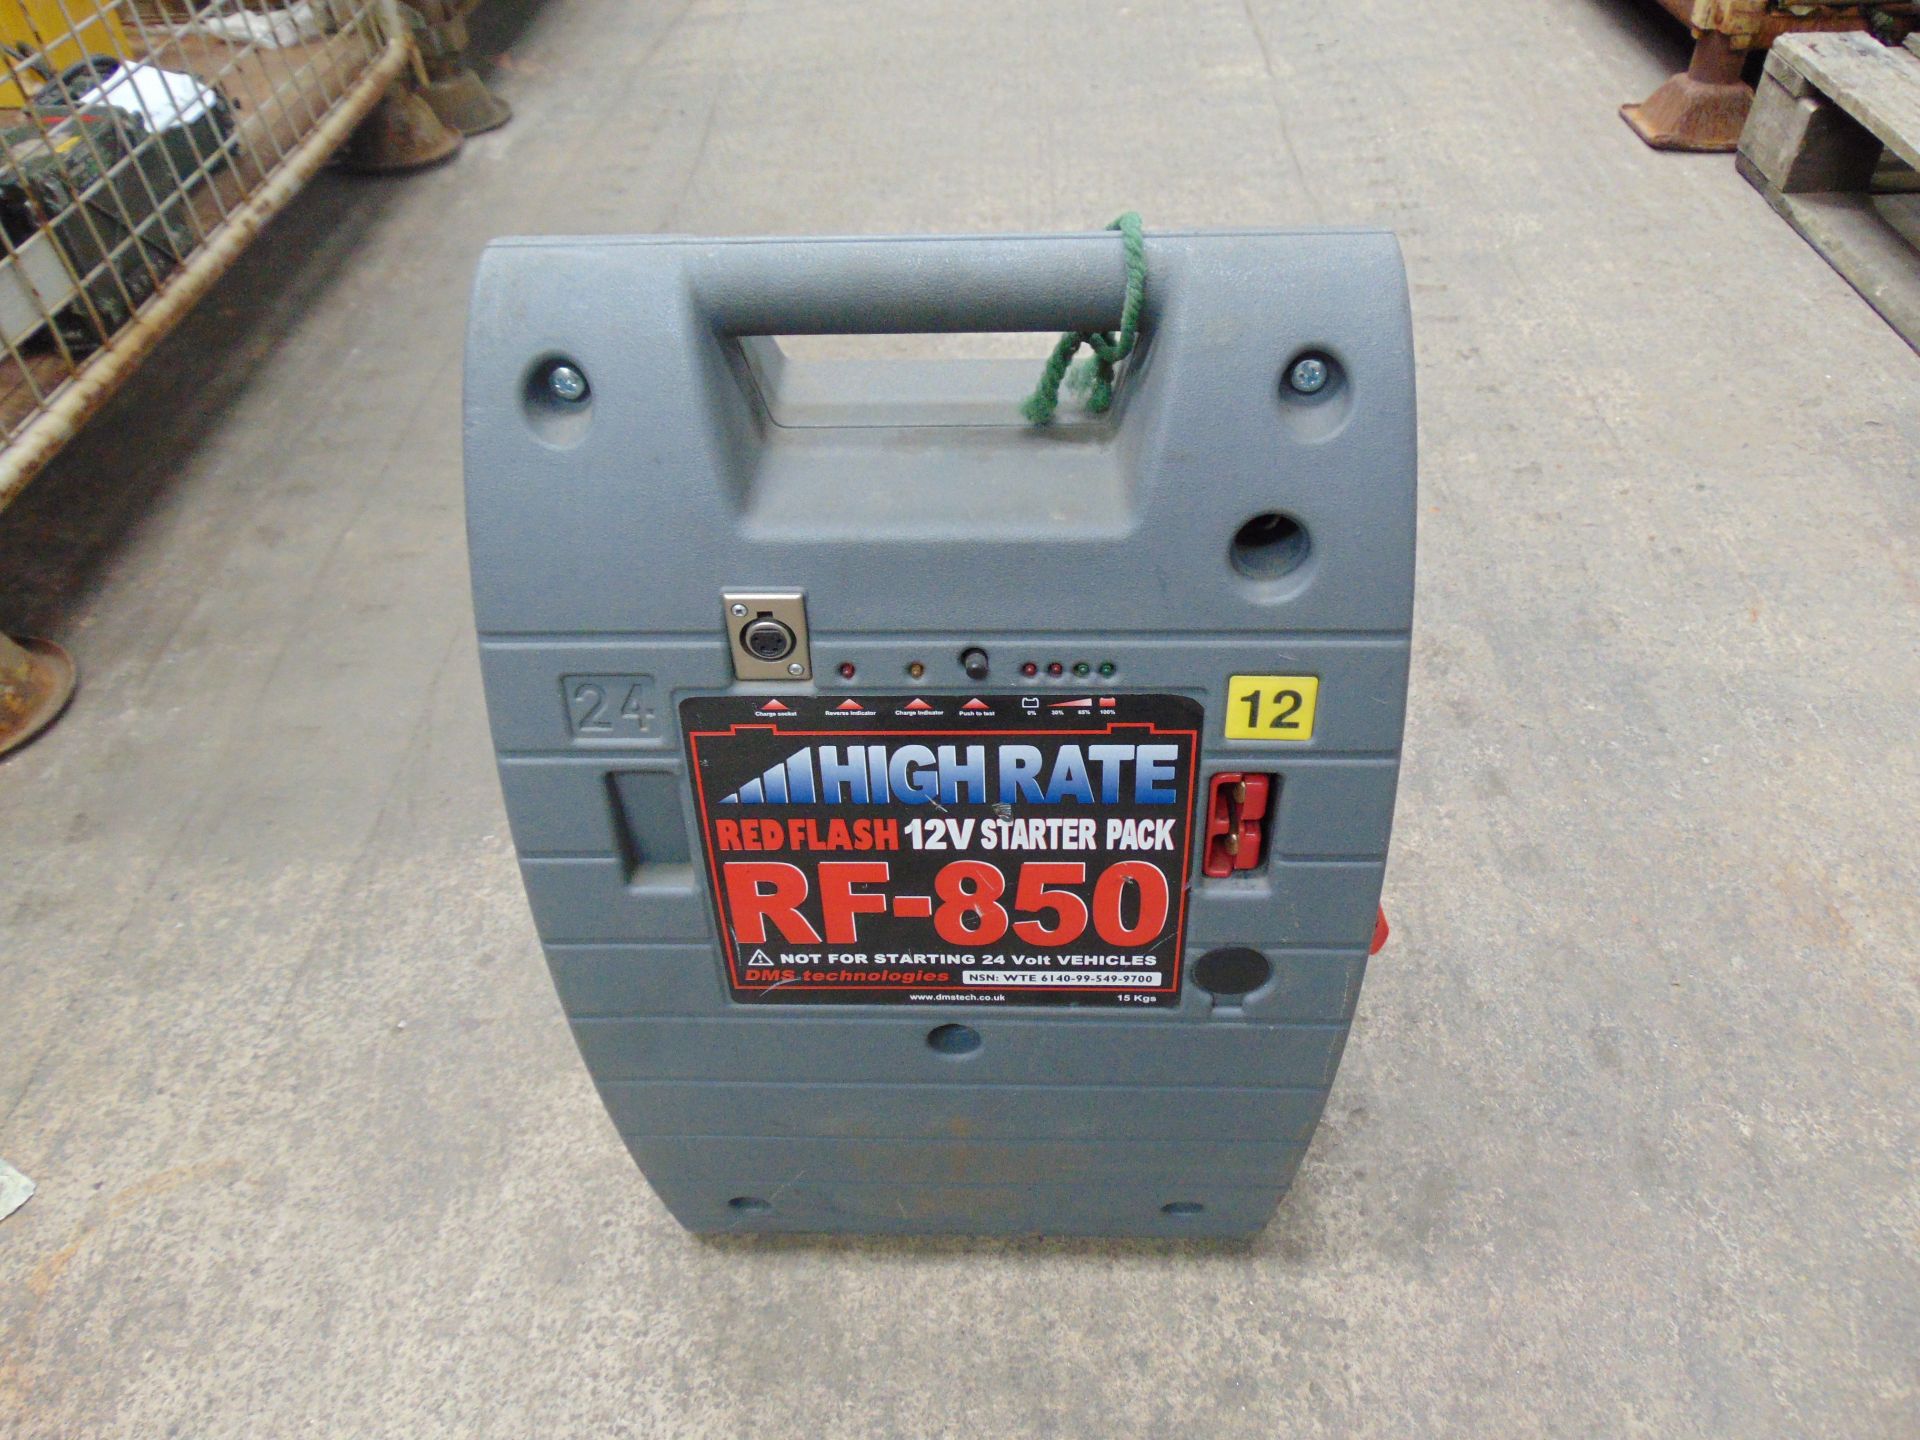 High Rate RF-850 12V Battery Pack